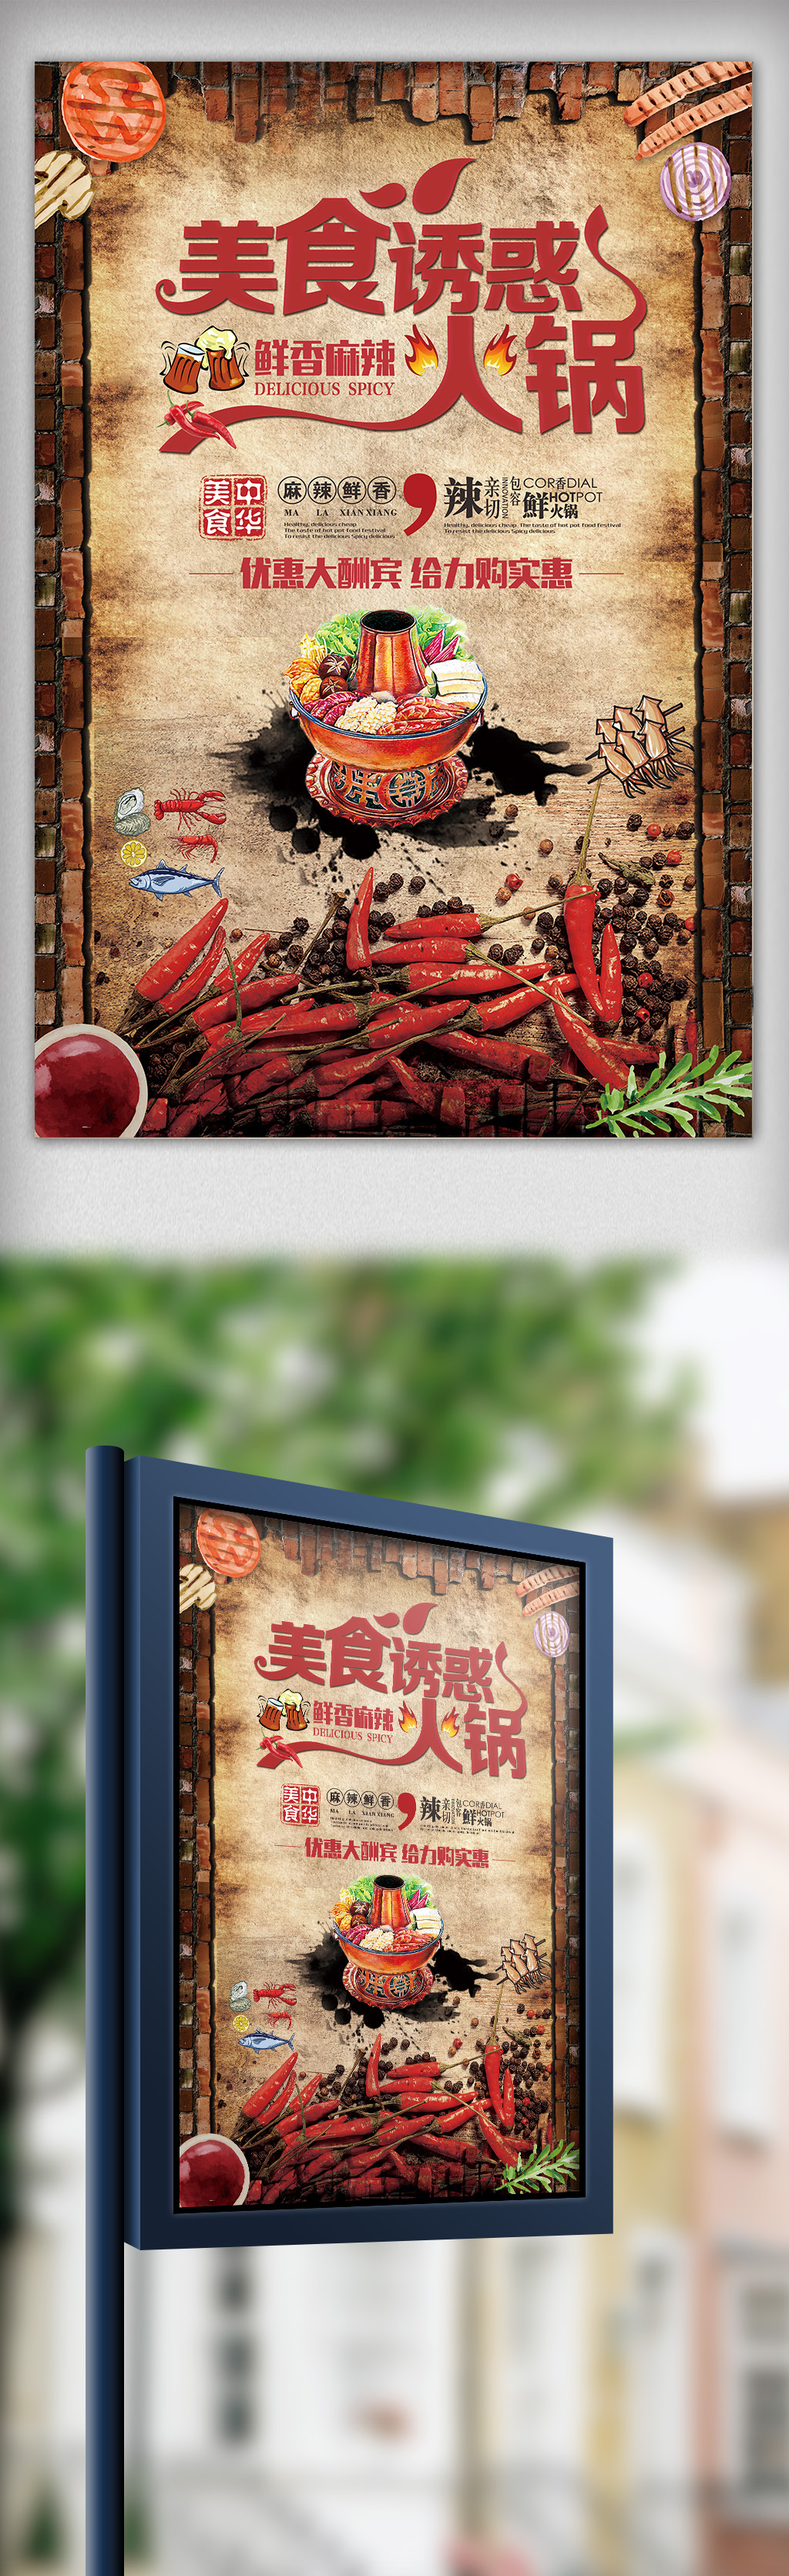 大气复古火锅餐饮宣传海报图片